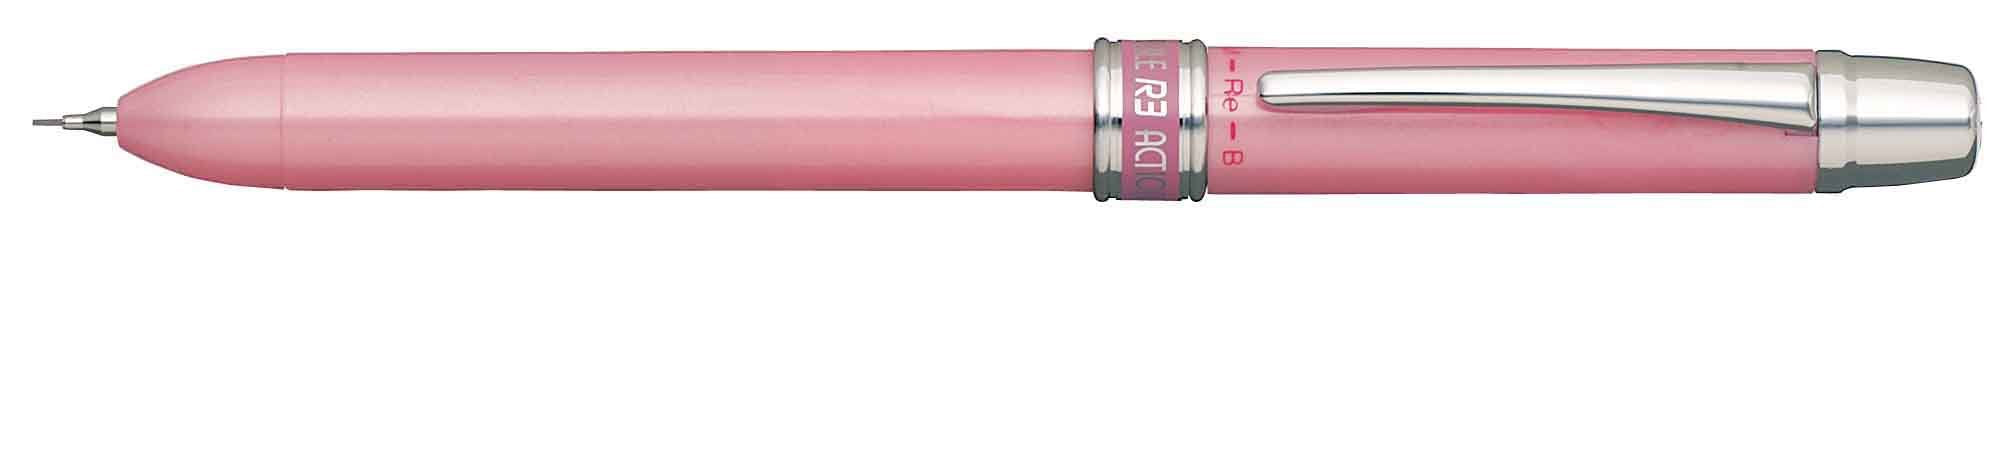 白金雙動三合一金屬粉紅鋼筆多功能 MWB-800RS#18